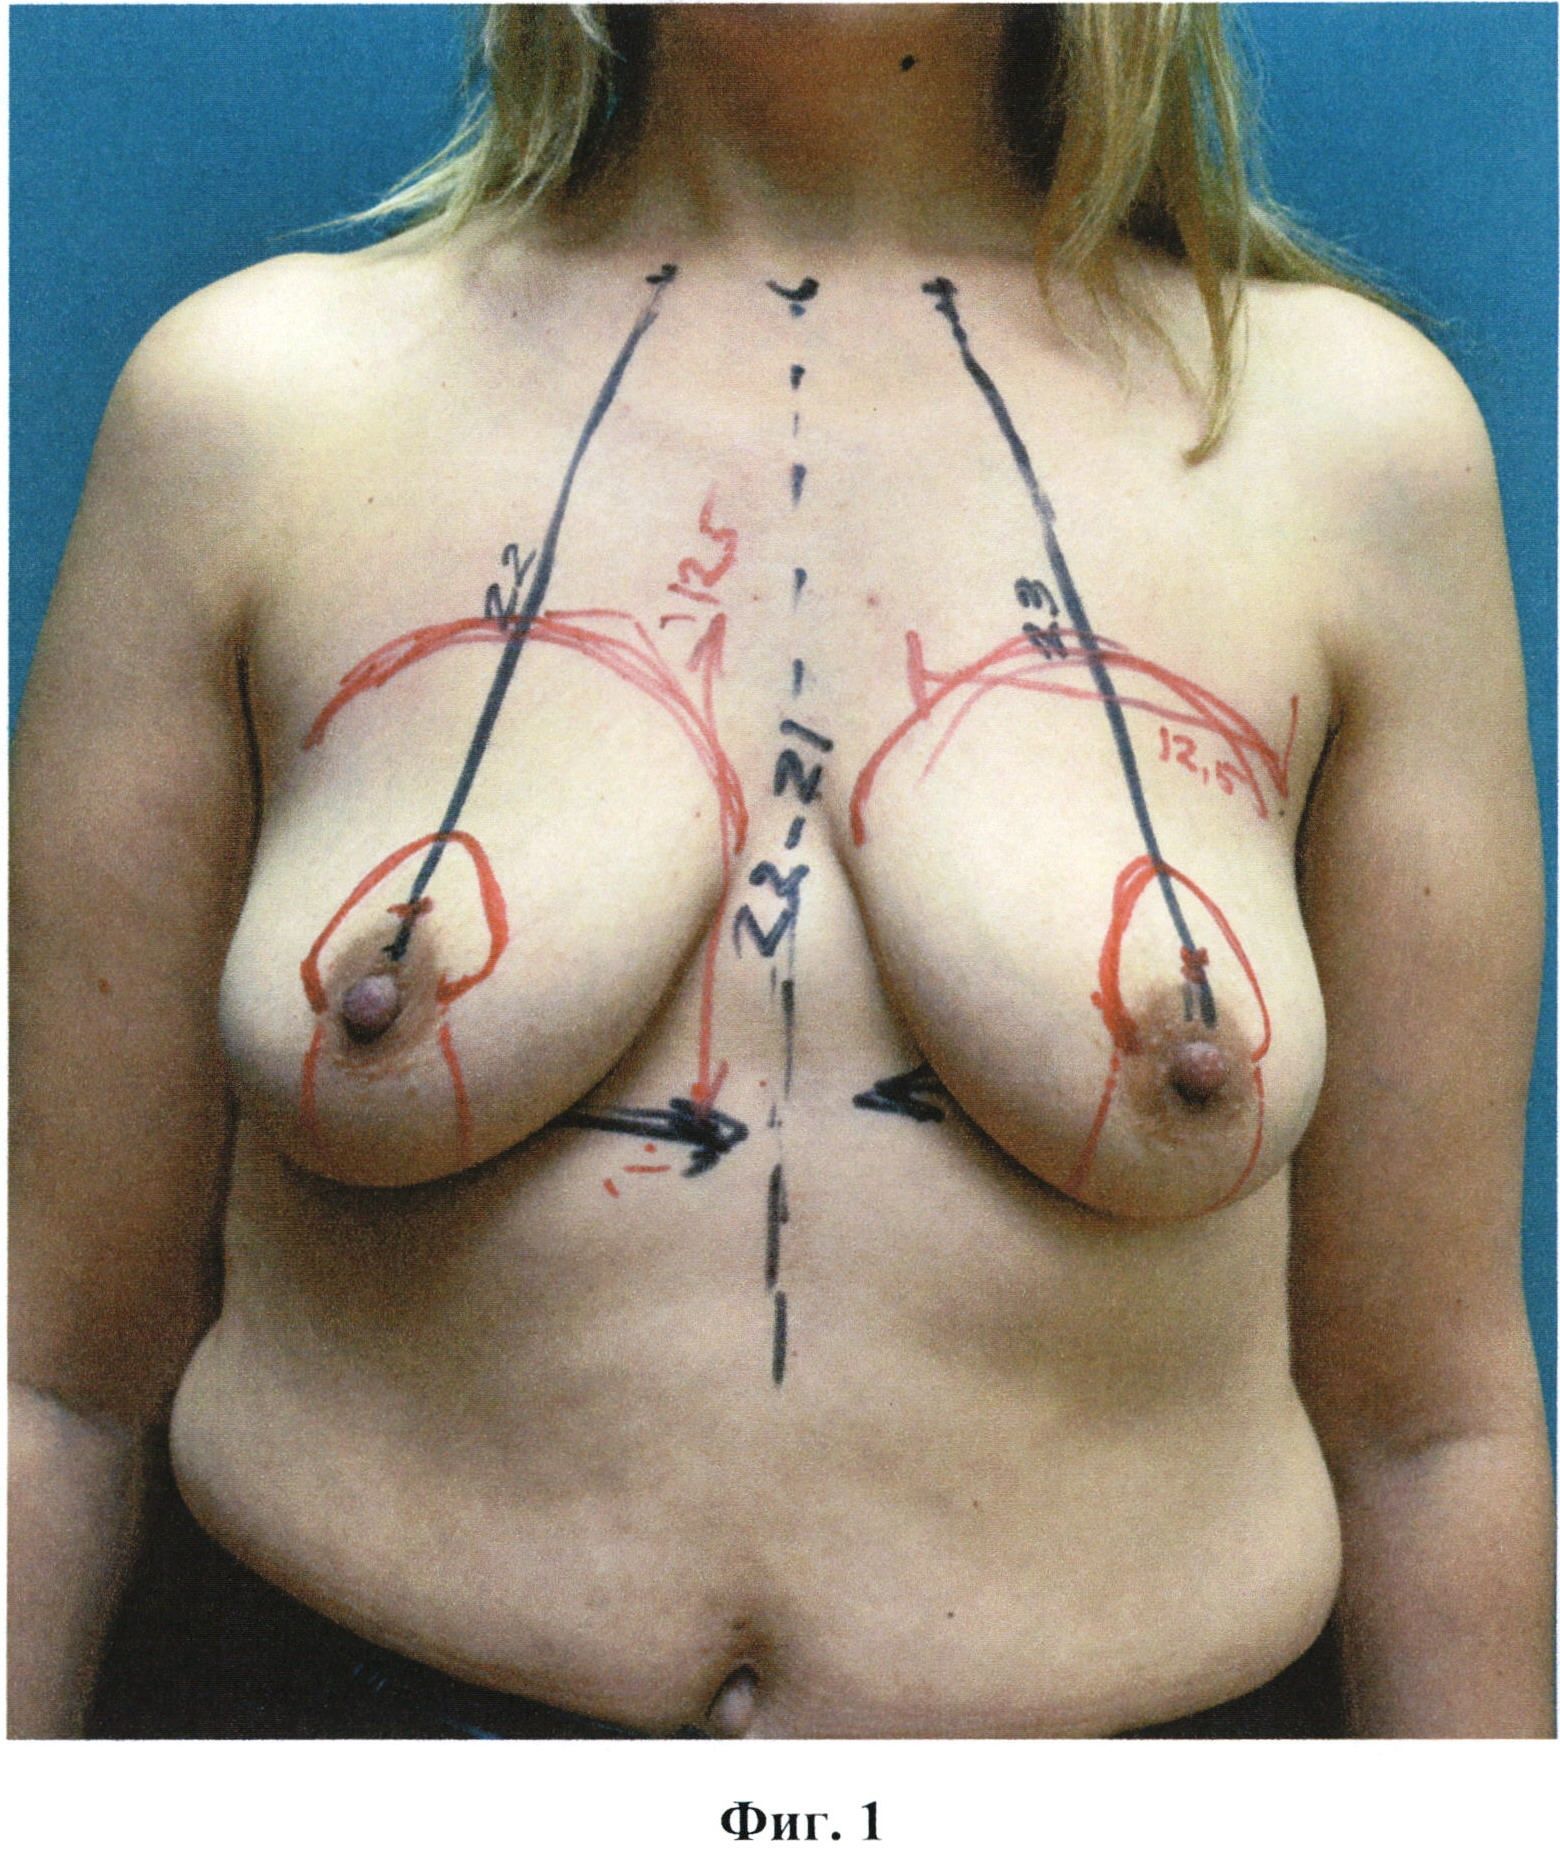 необычная форма груди у женщин фото 107